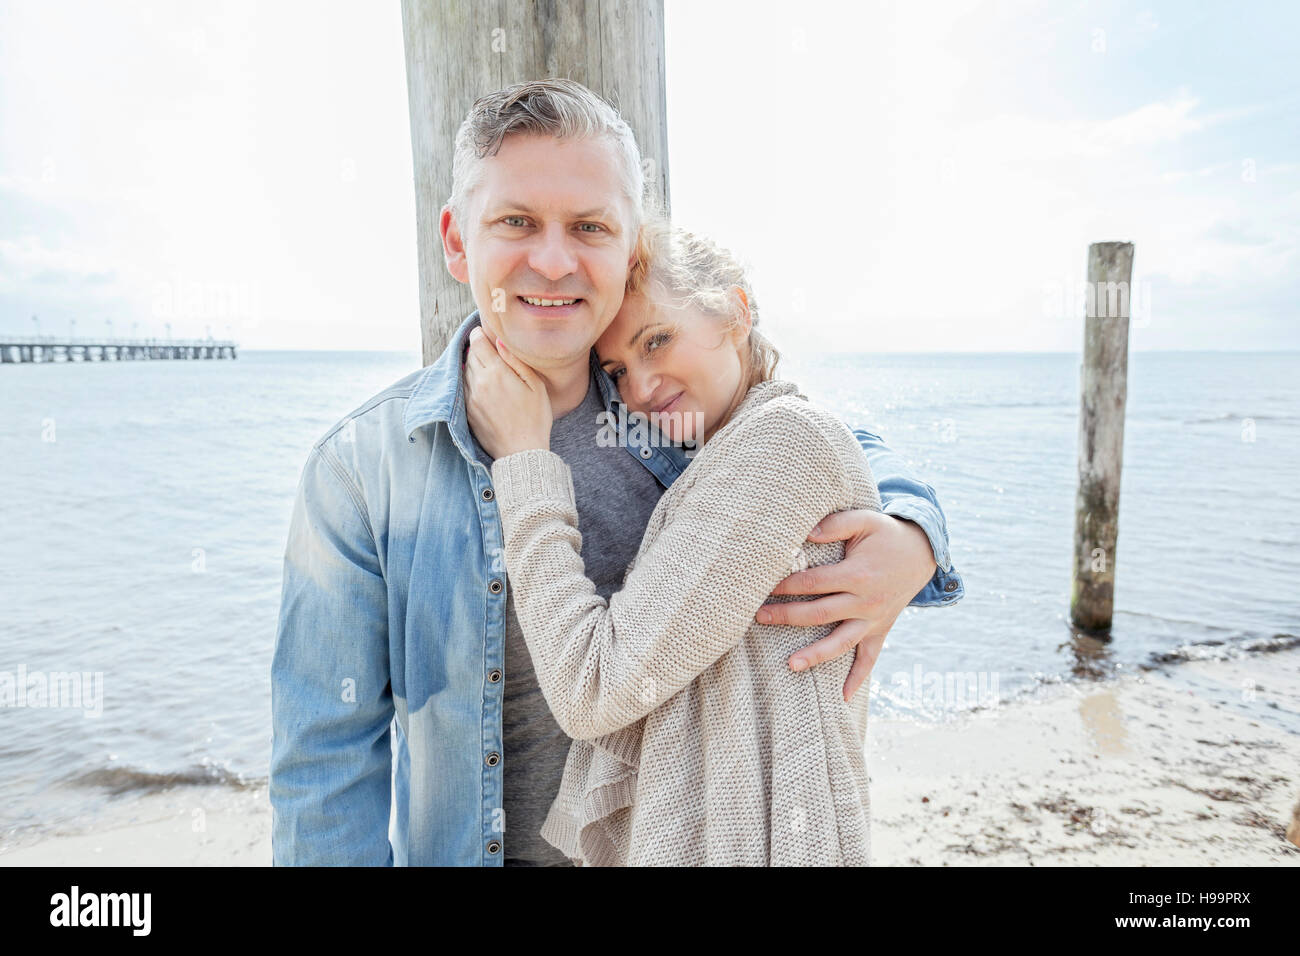 Portrait de couple in love on beach Banque D'Images